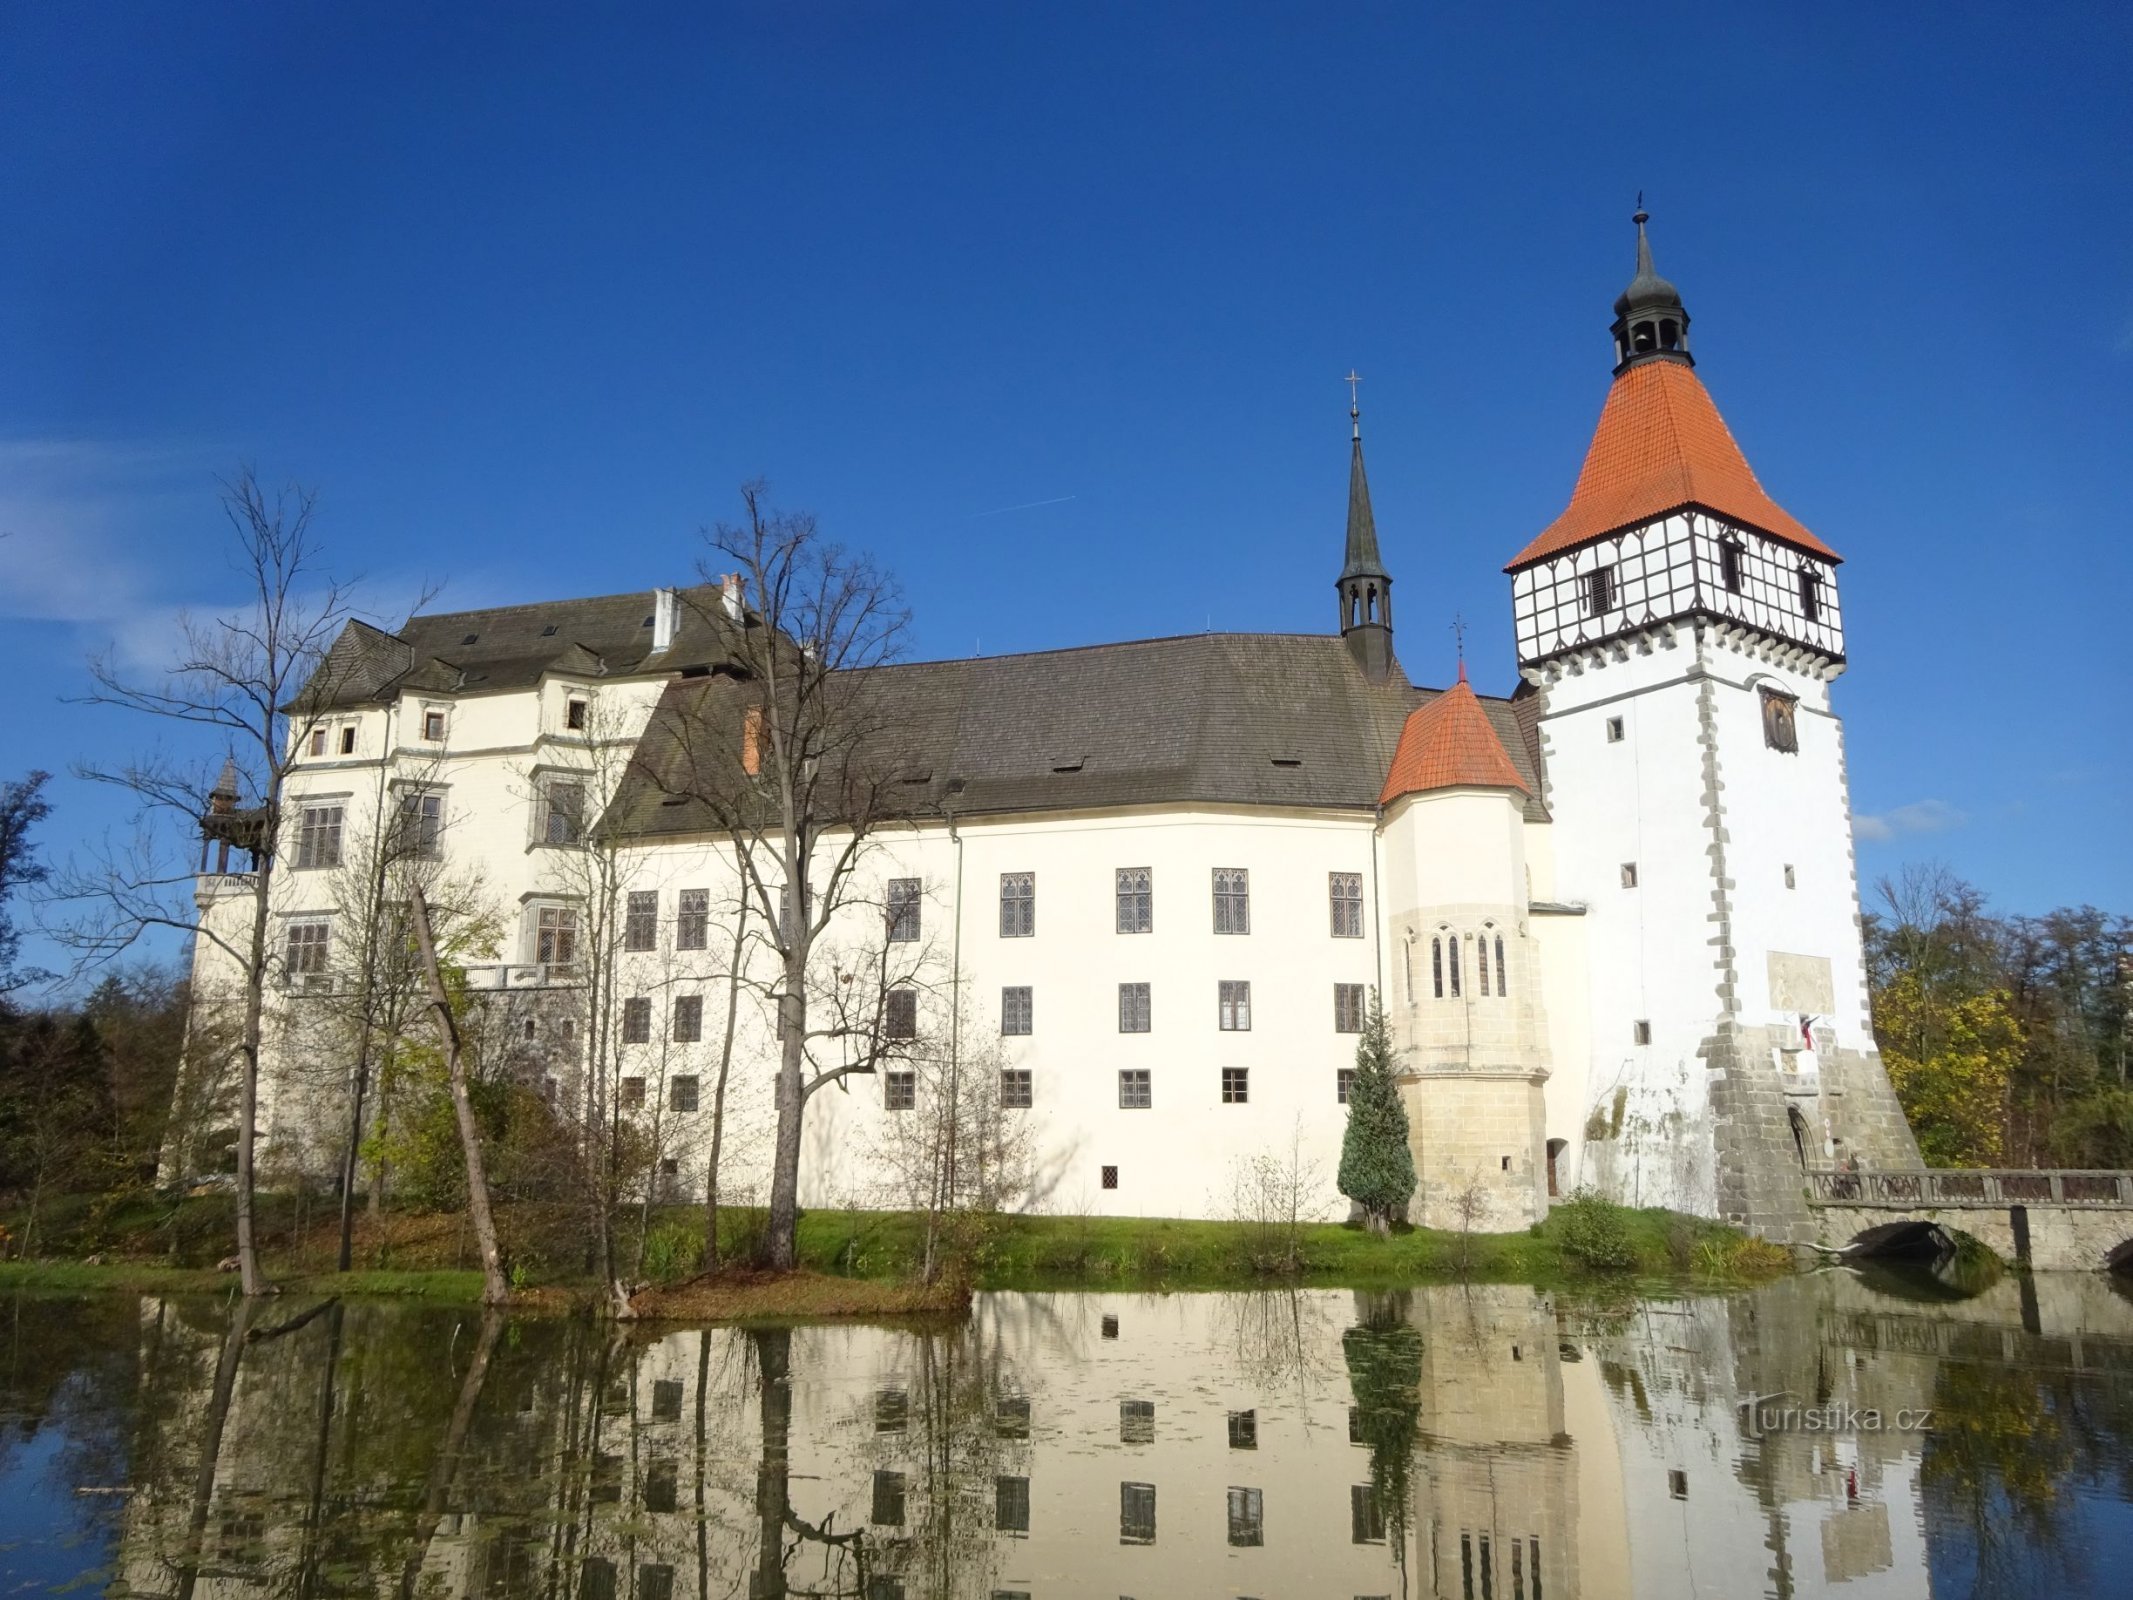 Blatná - castel, parc al castelului, puf și mesteacăn